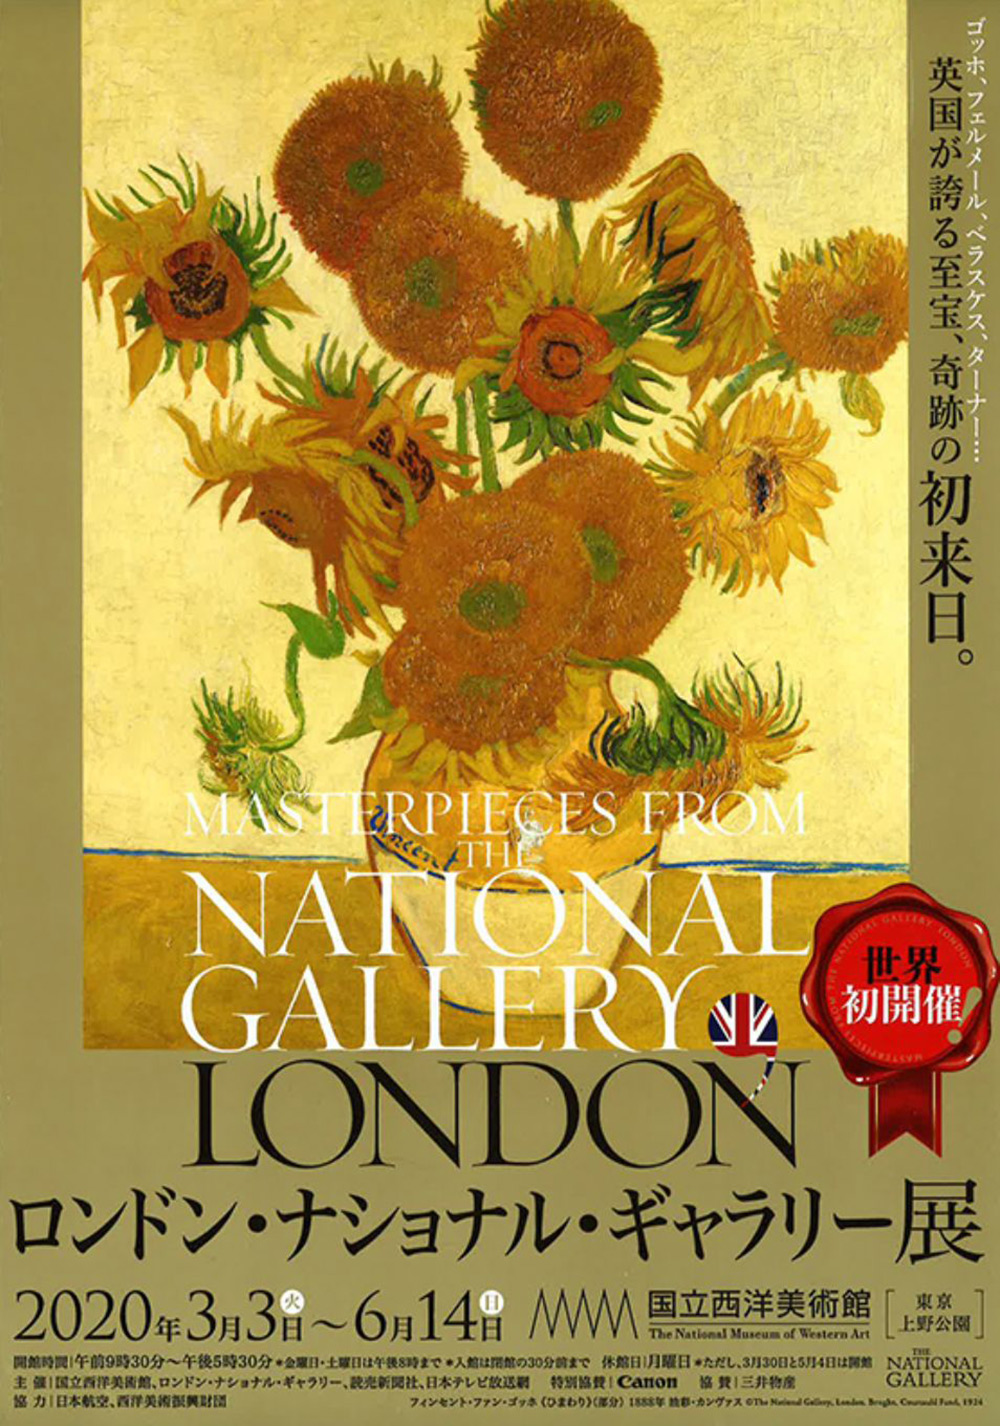 12款日文美术展览海报设计